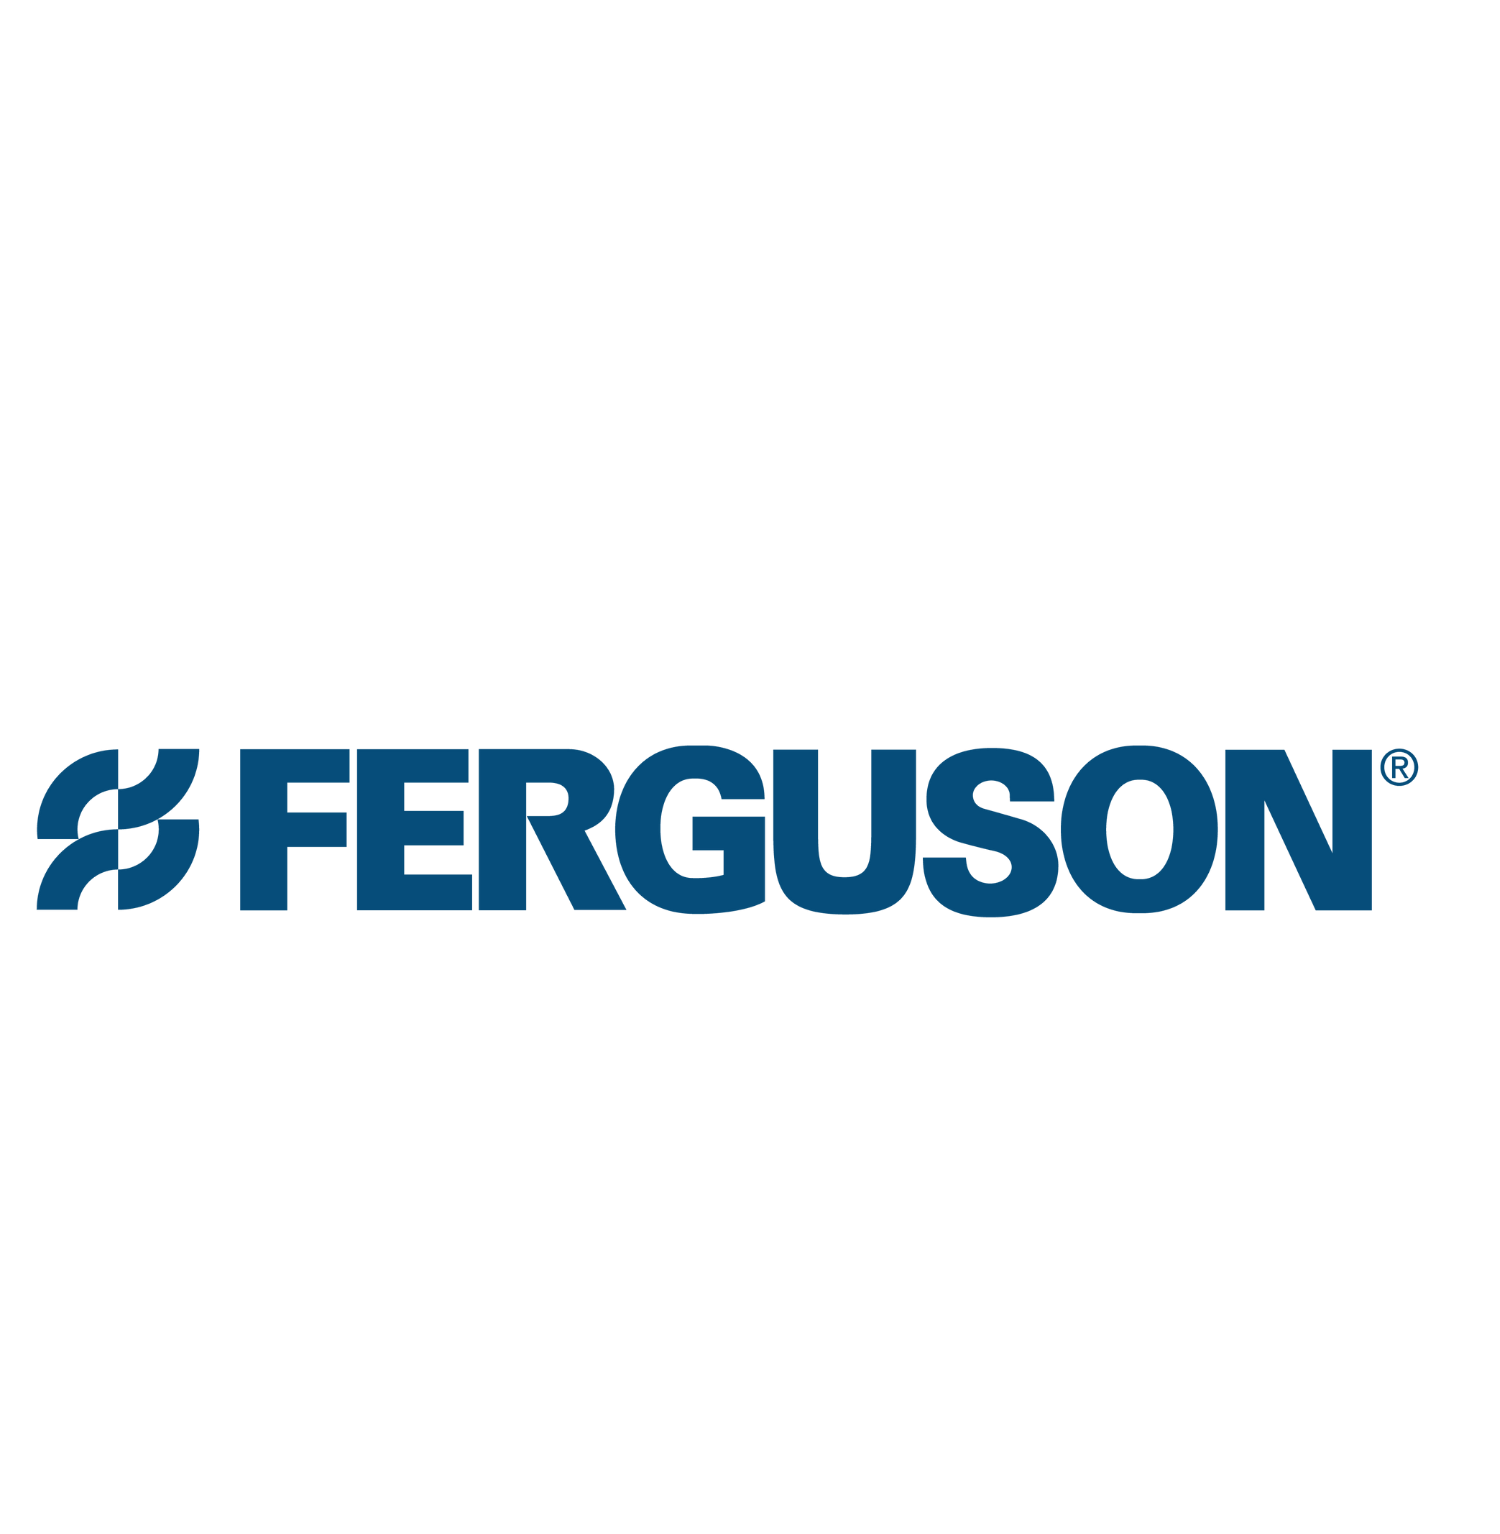 LARGE - Ferguson-1